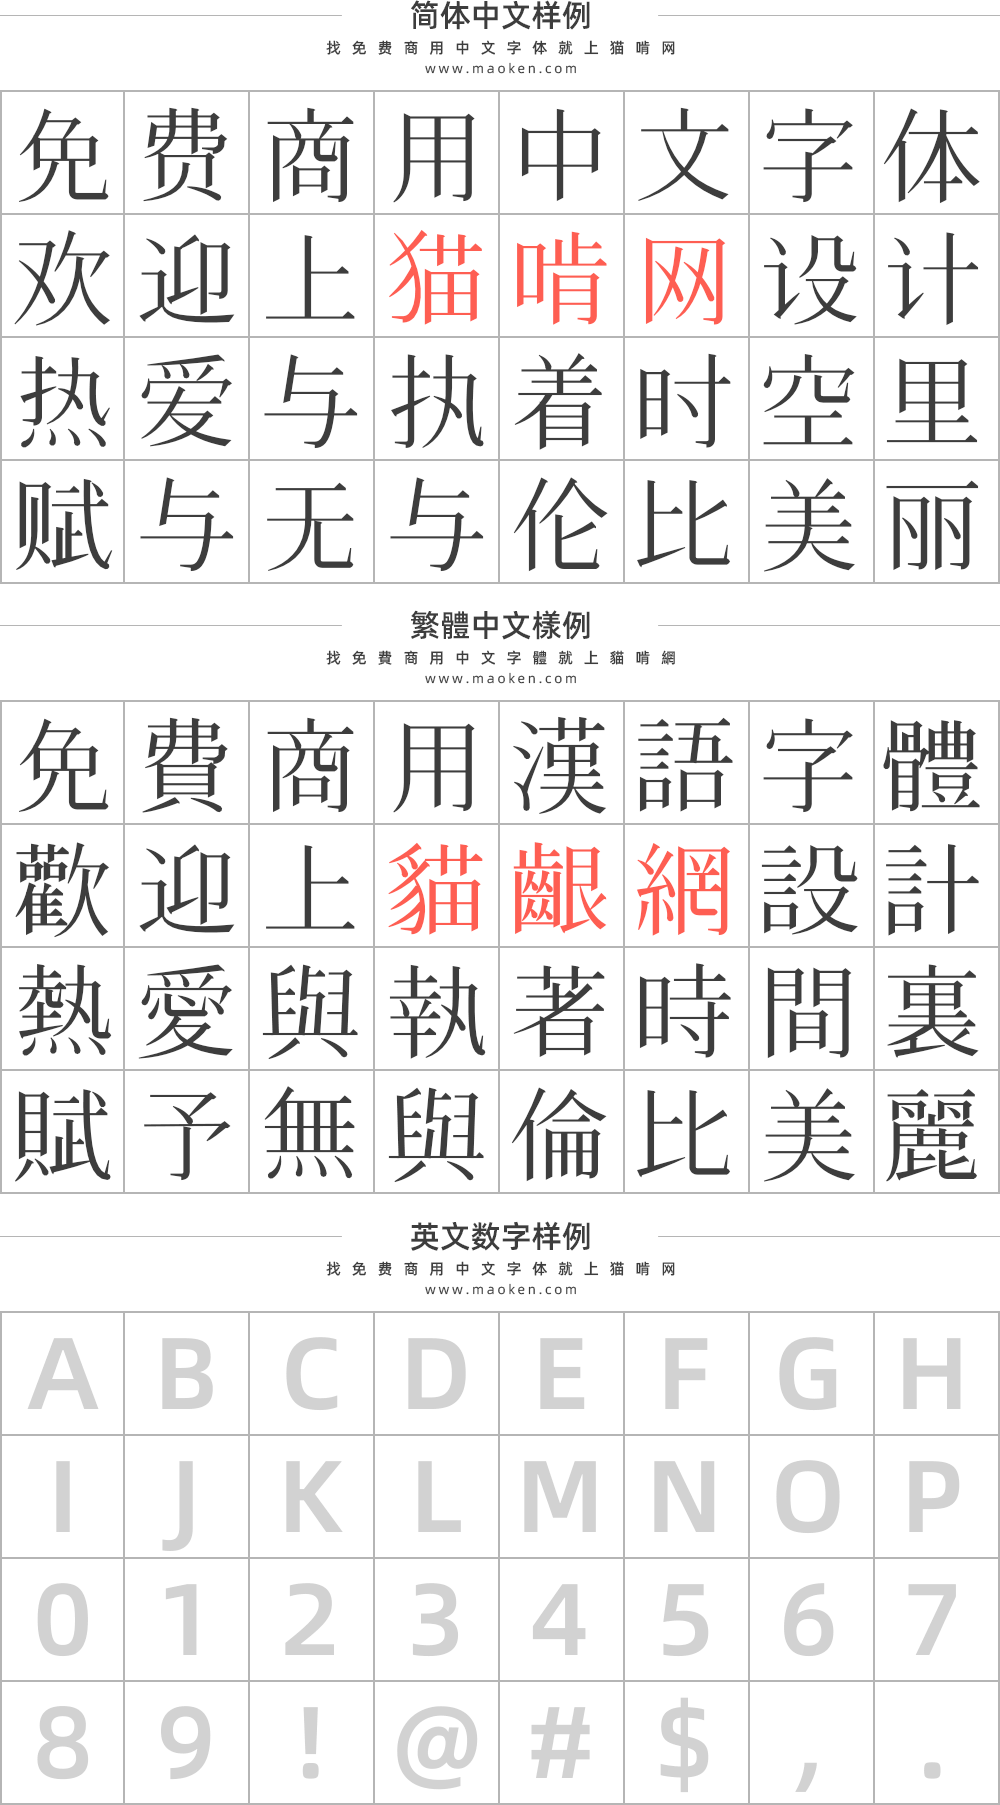 花园明朝体 几乎收录了所有汉字字形的免费开源字体 猫啃网 免费商用中文字体下载